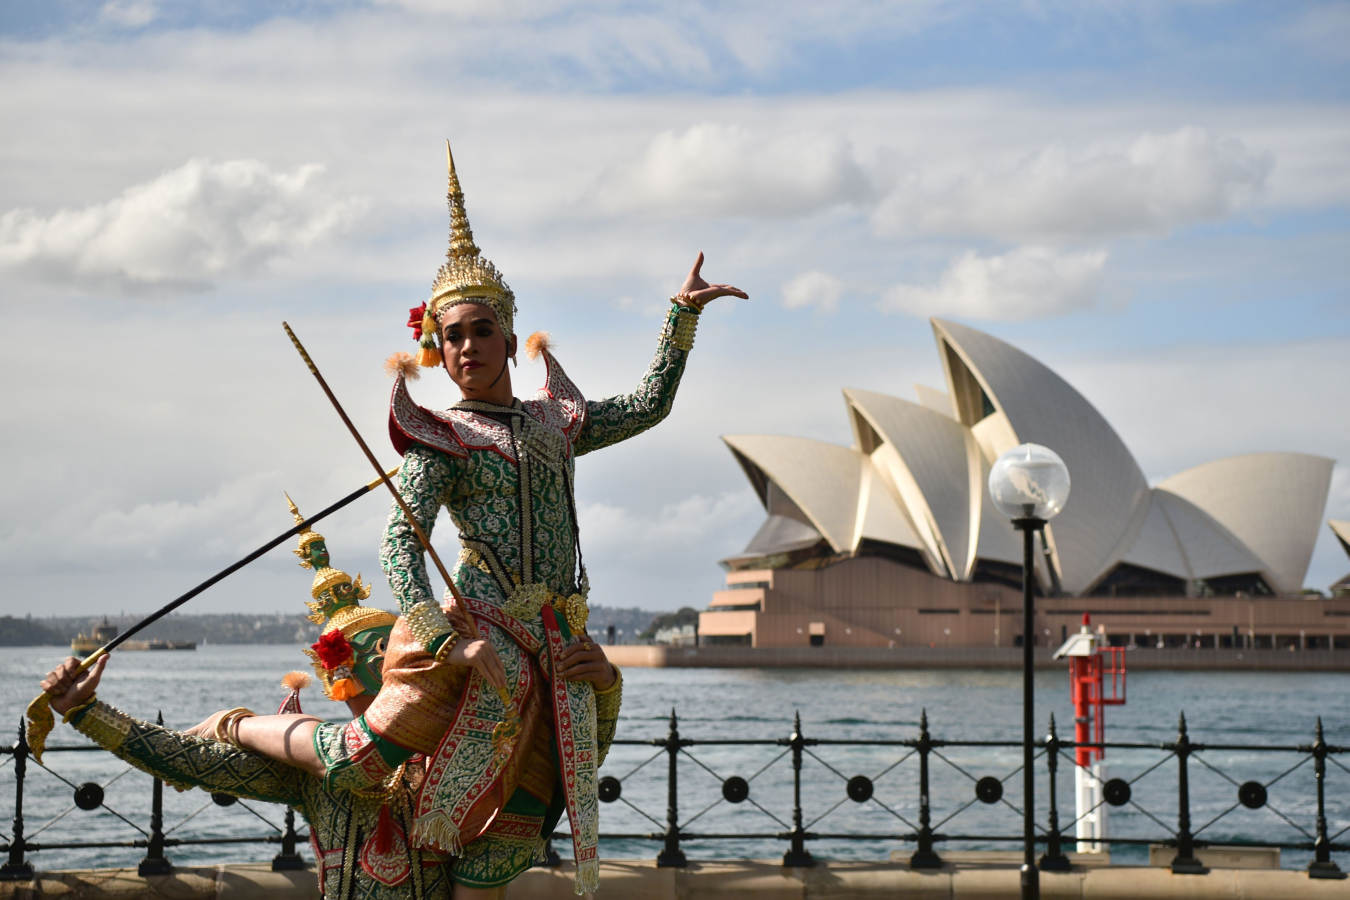 El grupo de danza ha celebrado los 65 años de relaciones bilaterales entre Australia y Tailandia